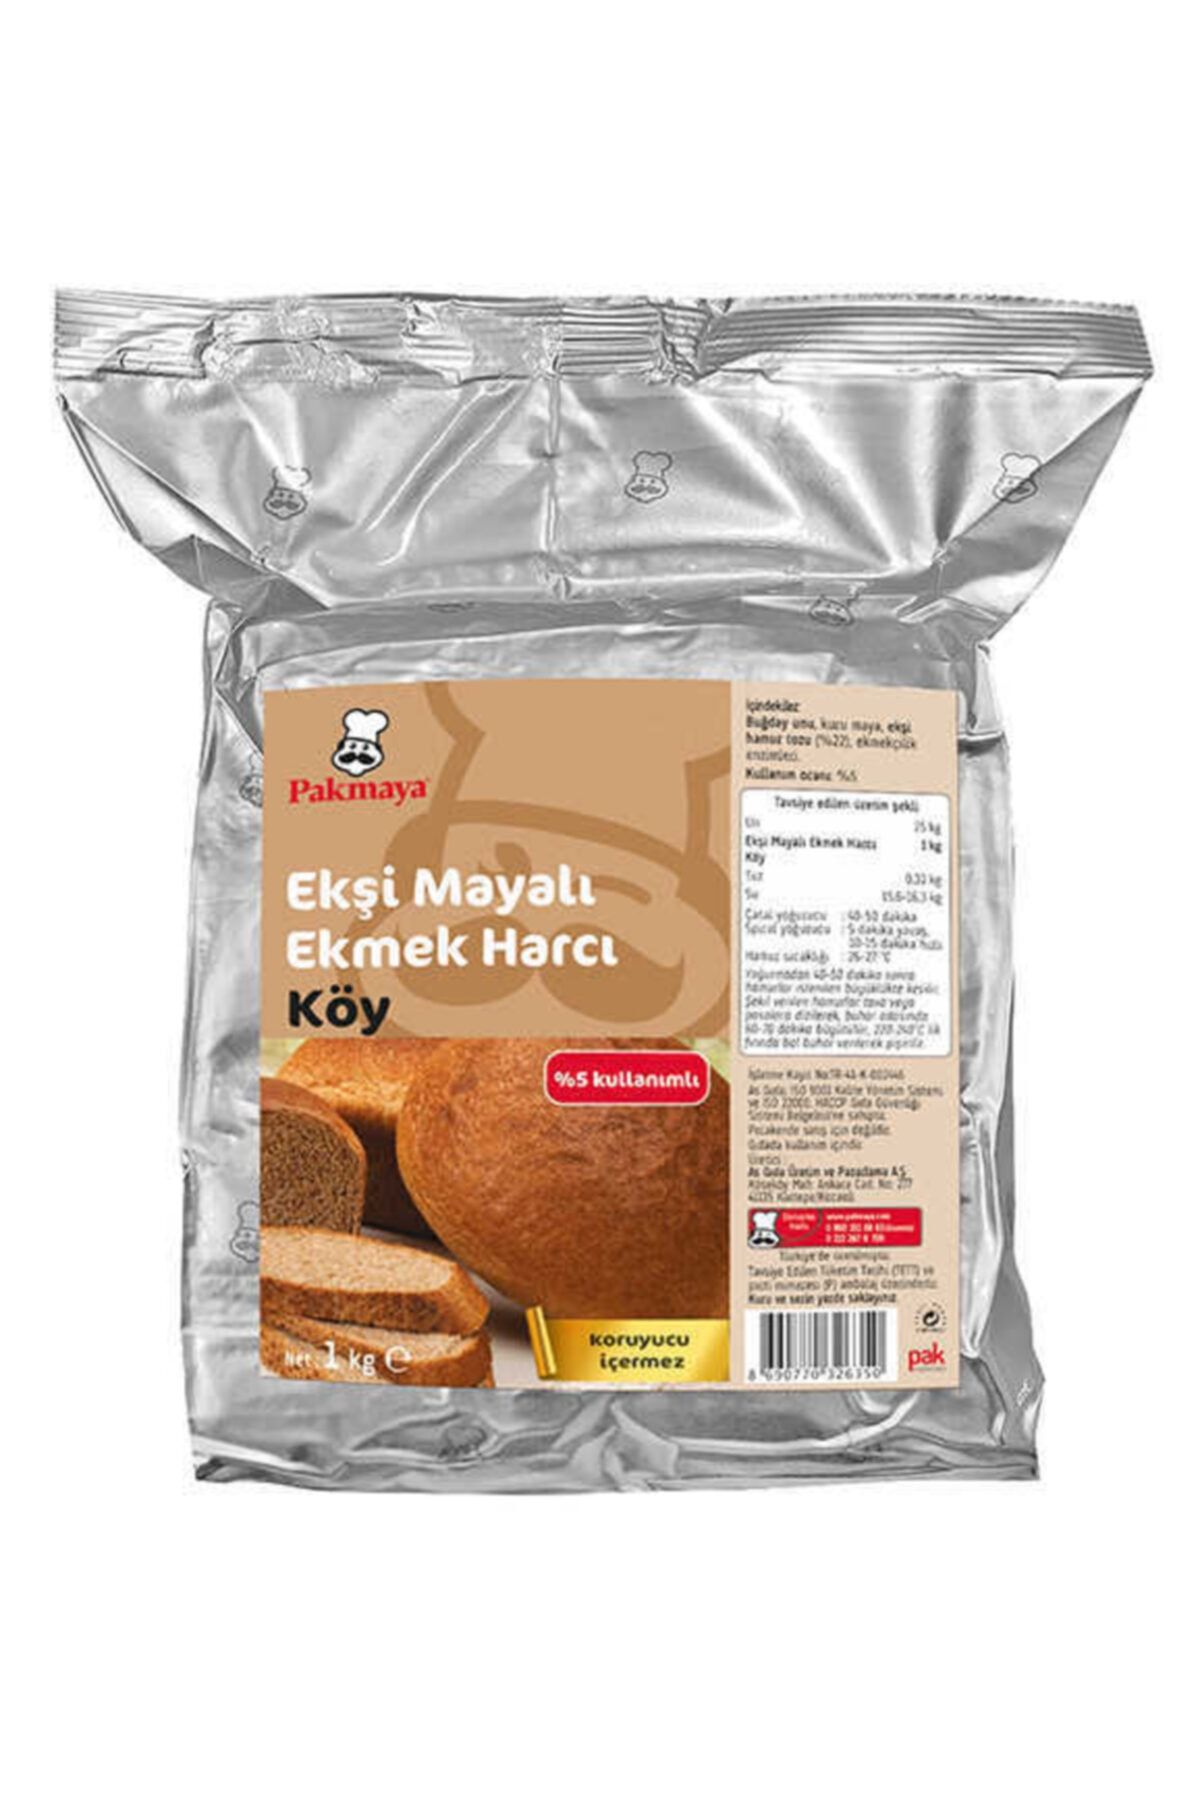 Pakmaya Pak Ekşi Mayalı Harç Köy Ekmeği 1kg